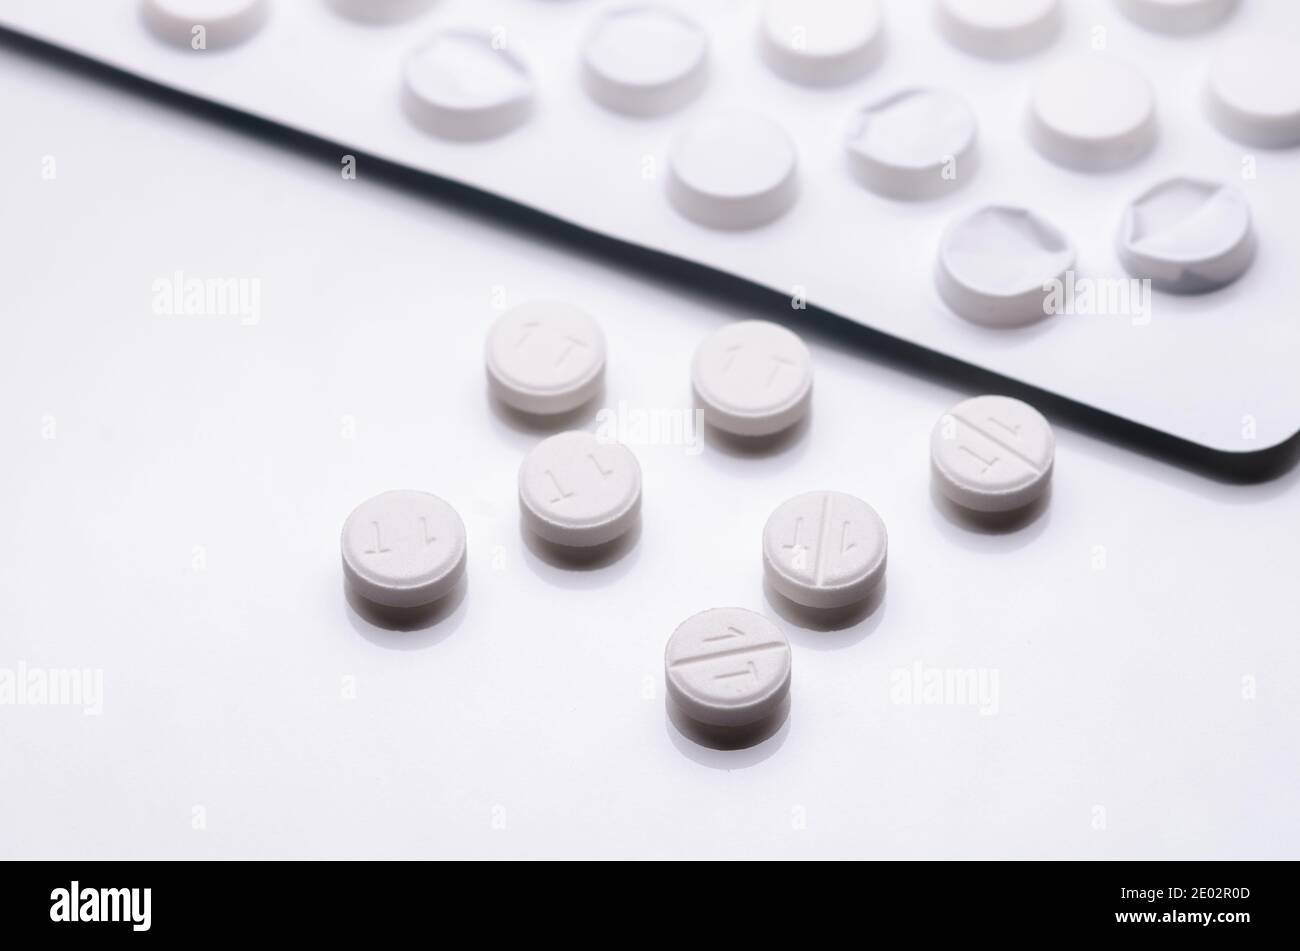 Weiße Pillen oder Tabletten auf weißem Hintergrund, Blisterpackung, Nahaufnahme Stillleben, High-Key-Beleuchtung, flach legen, Apotheke, Medikamente oder Medizin-Konzept Stockfoto